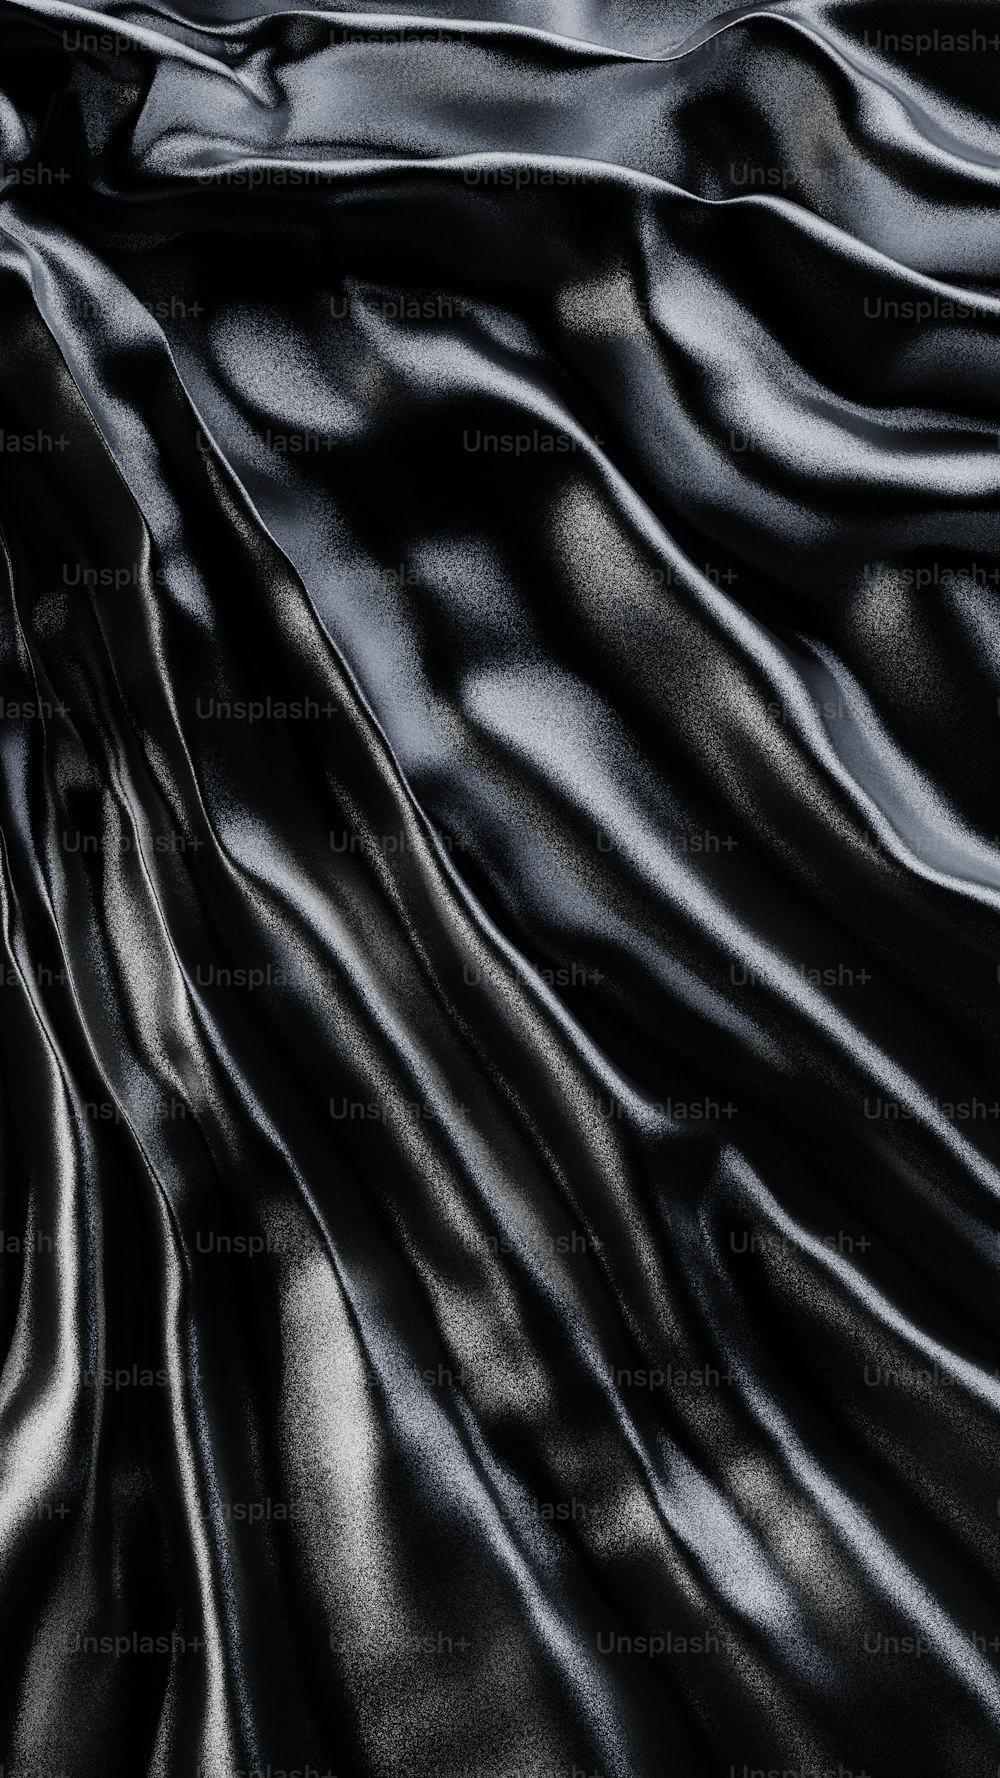 un tessuto di seta nera con una finitura molto liscia